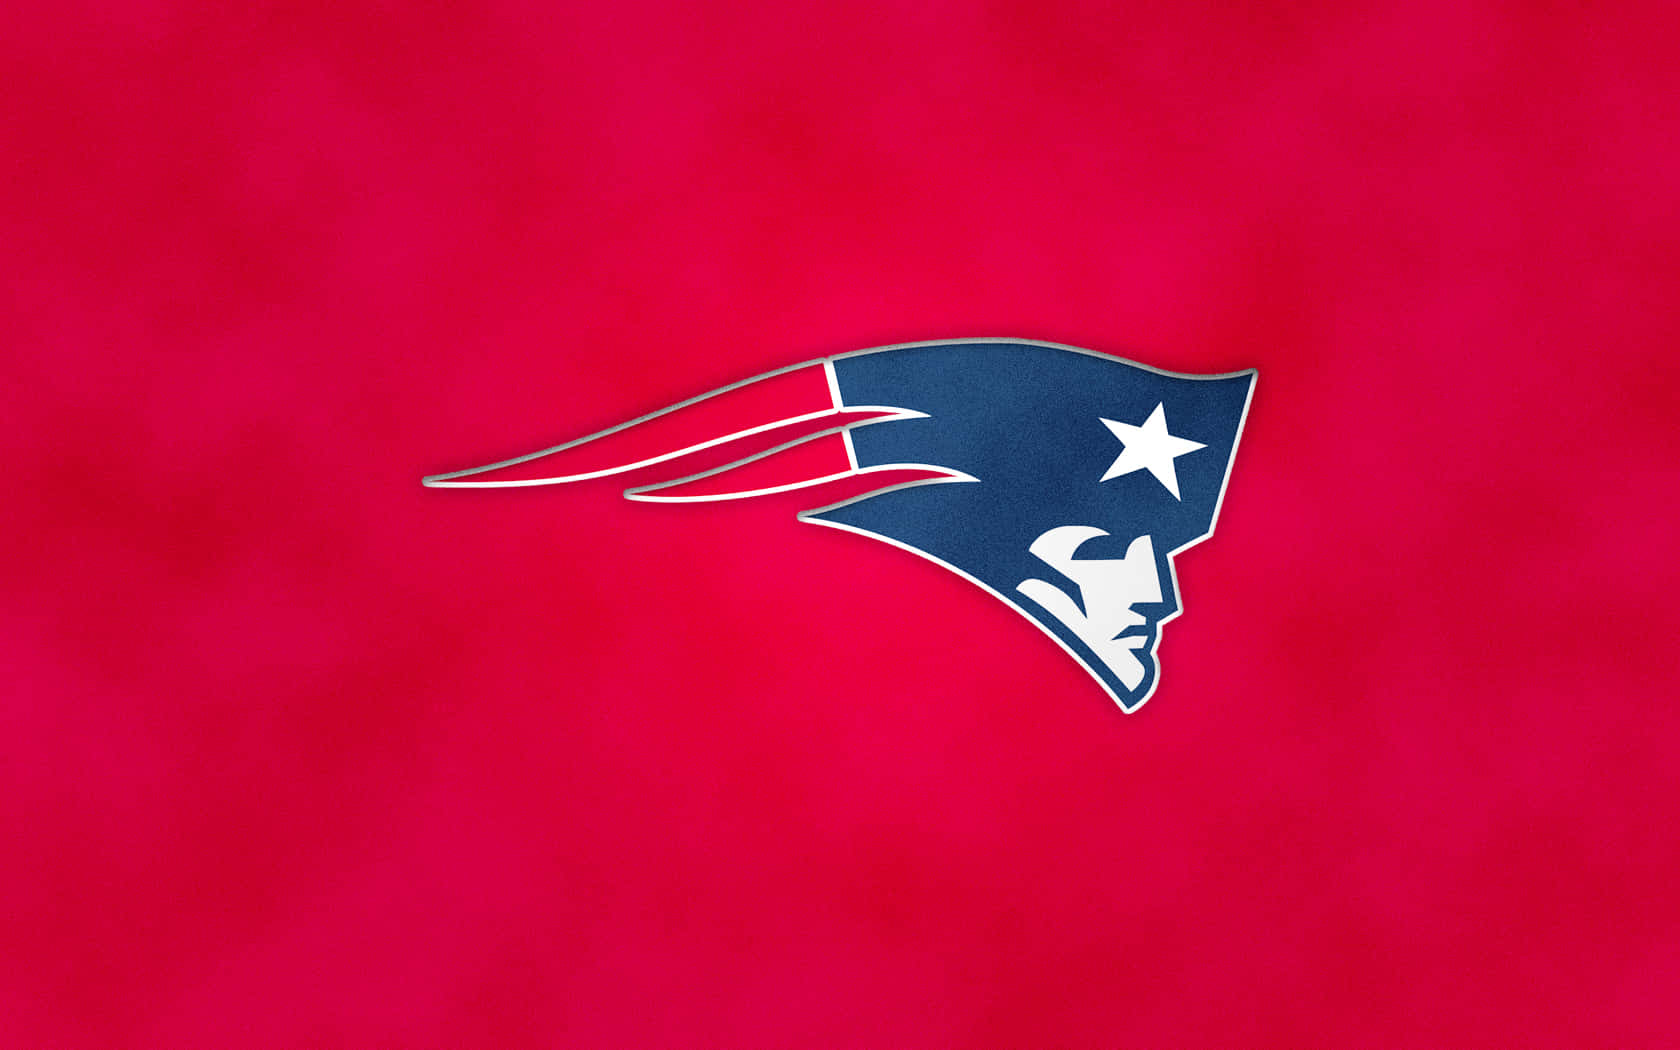 Einneues New England Patriots-logo Auf Einem Roten Hintergrund. Wallpaper